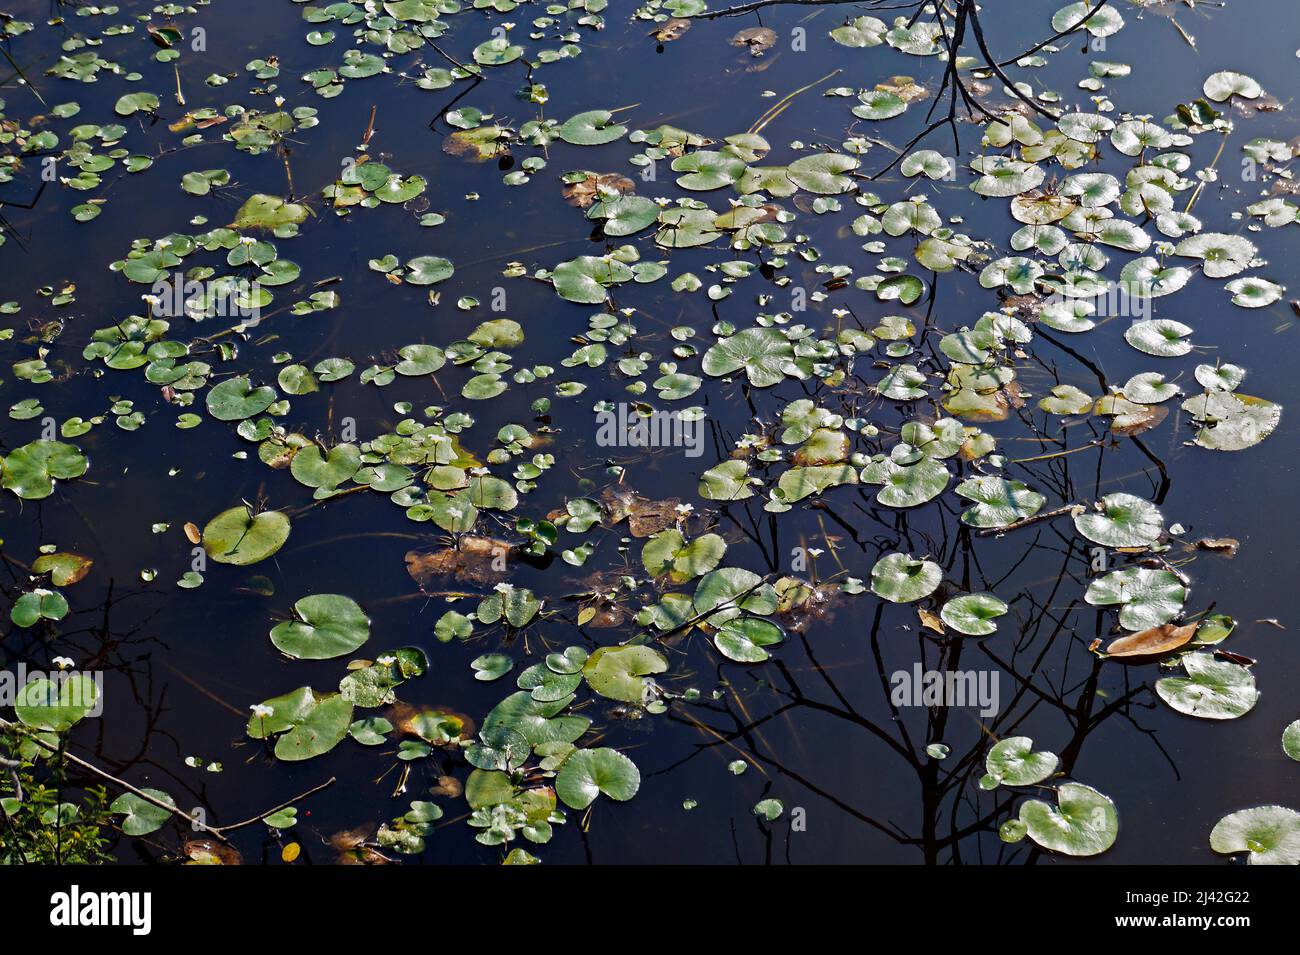 Piante acquatiche (Nymphoides indica) sul lago Foto Stock